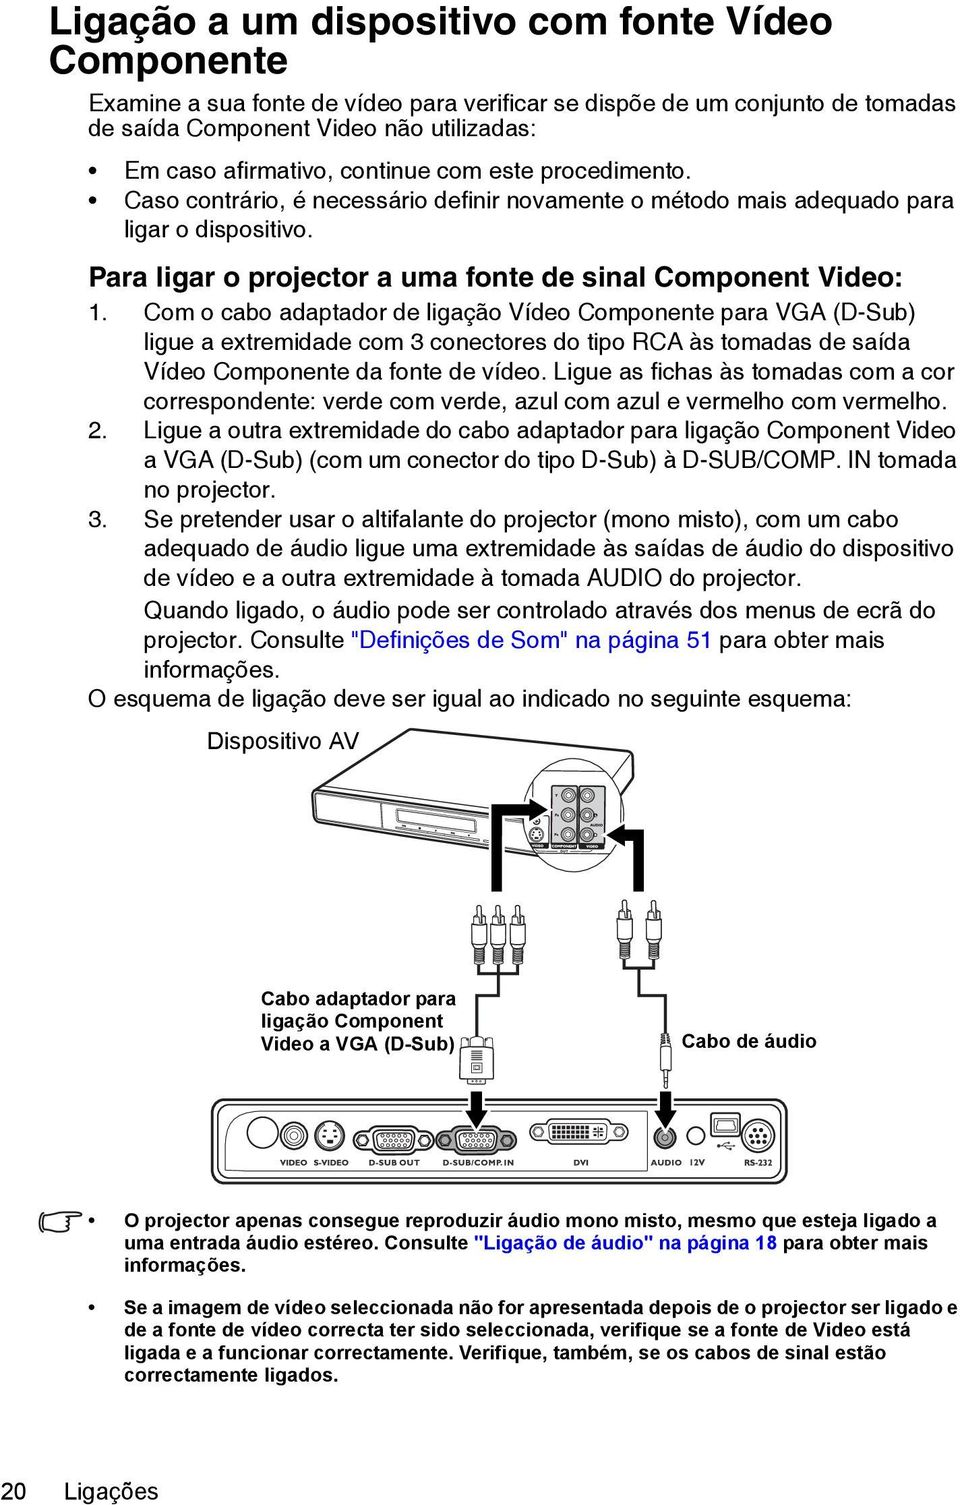 Com o cabo adaptador de ligação Vídeo Componente para VGA (D-Sub) ligue a extremidade com 3 conectores do tipo RCA às tomadas de saída Vídeo Componente da fonte de vídeo.